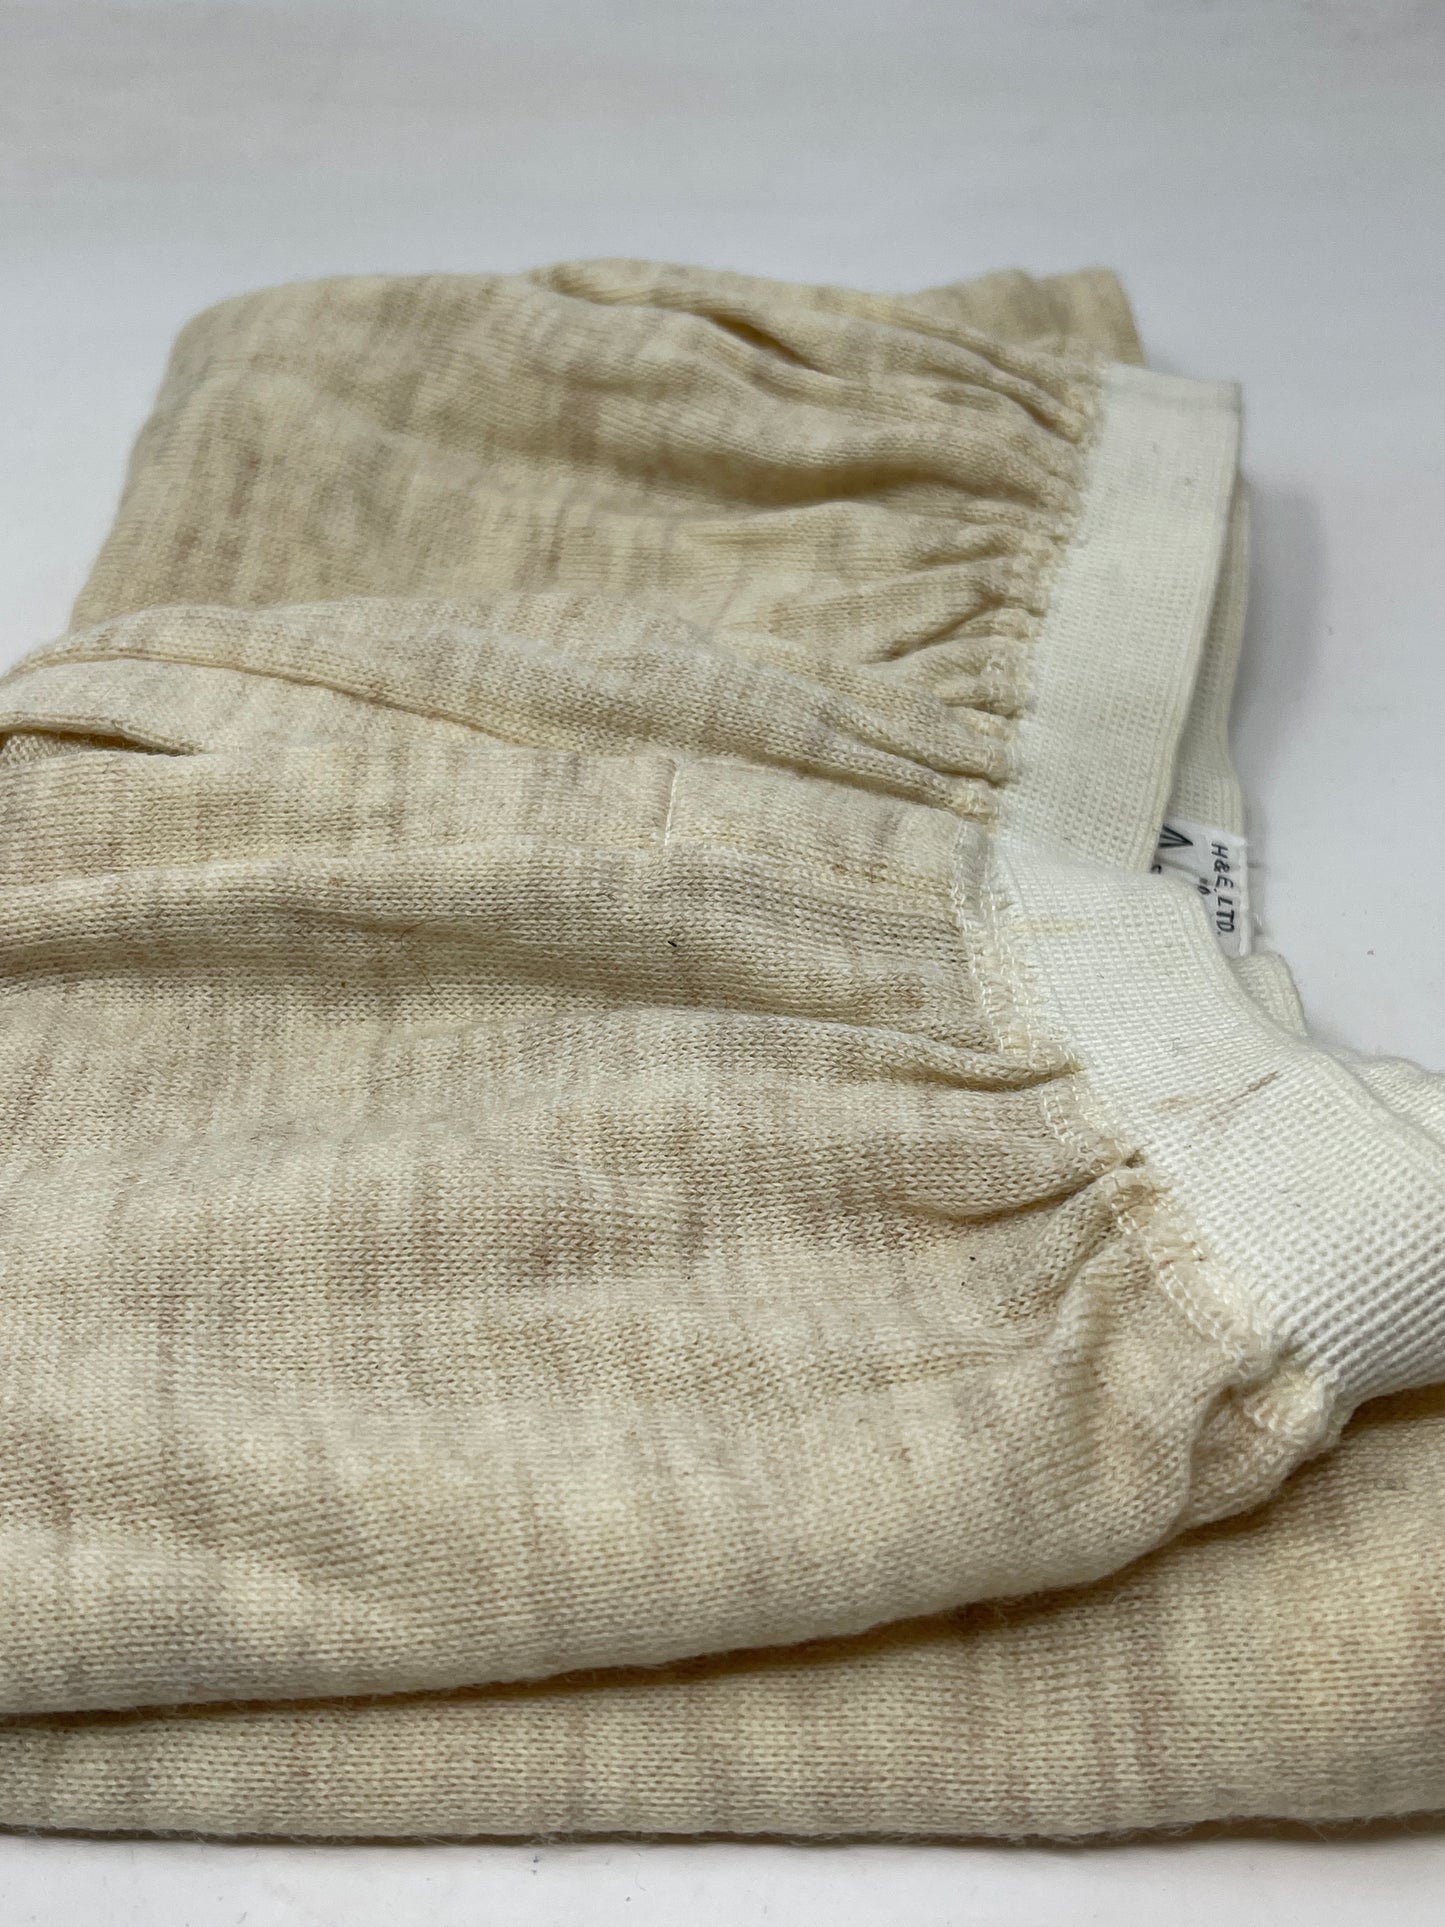 British Army Underwear 1954 Dated